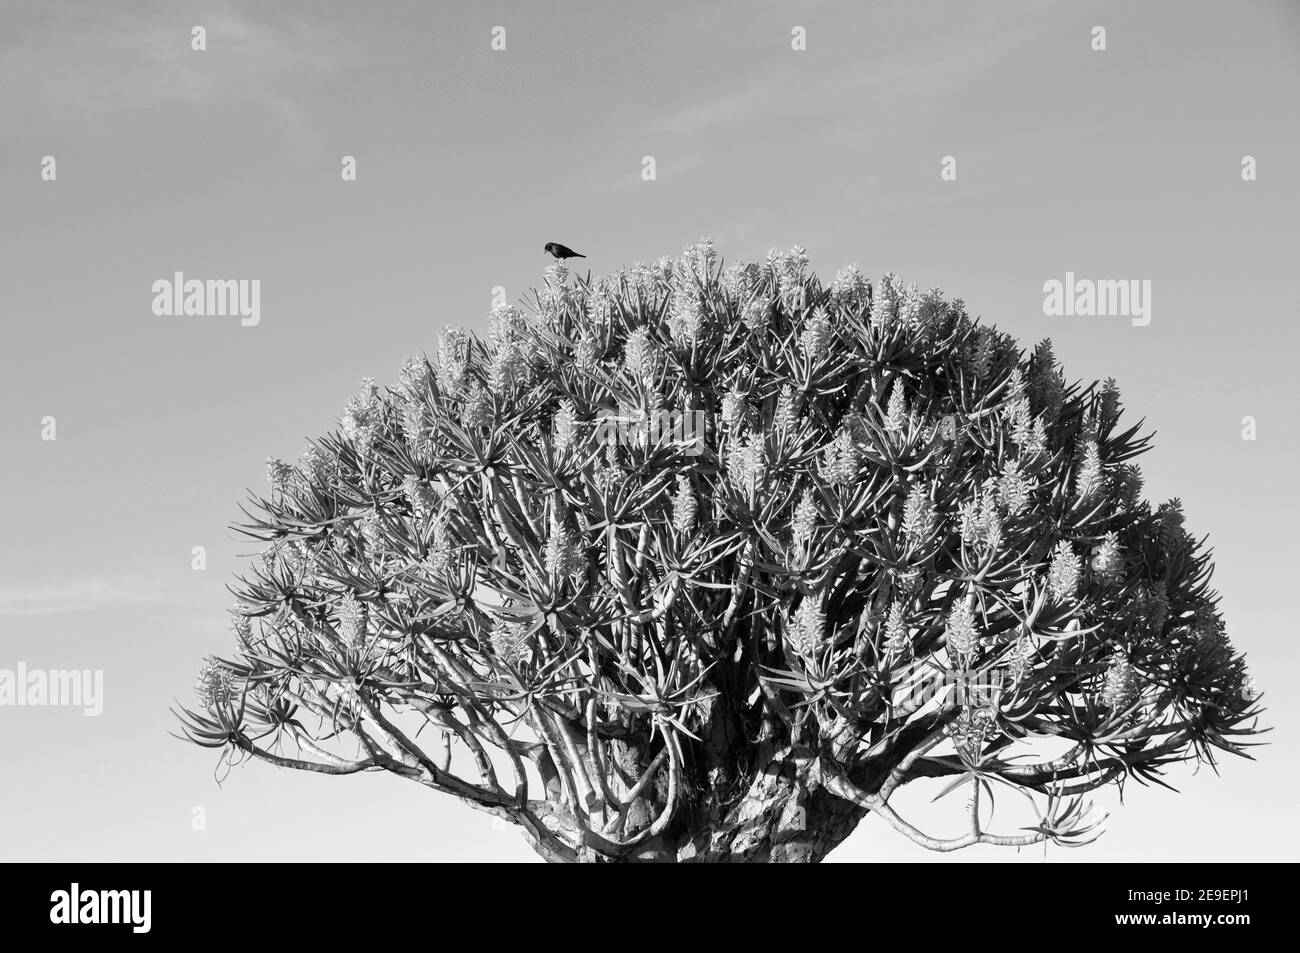 Endemische Köcher-Baum (Aloe dichotom, köcherbaum) Wald in der Nähe von Keetmanshoop in Namibia Stockfoto